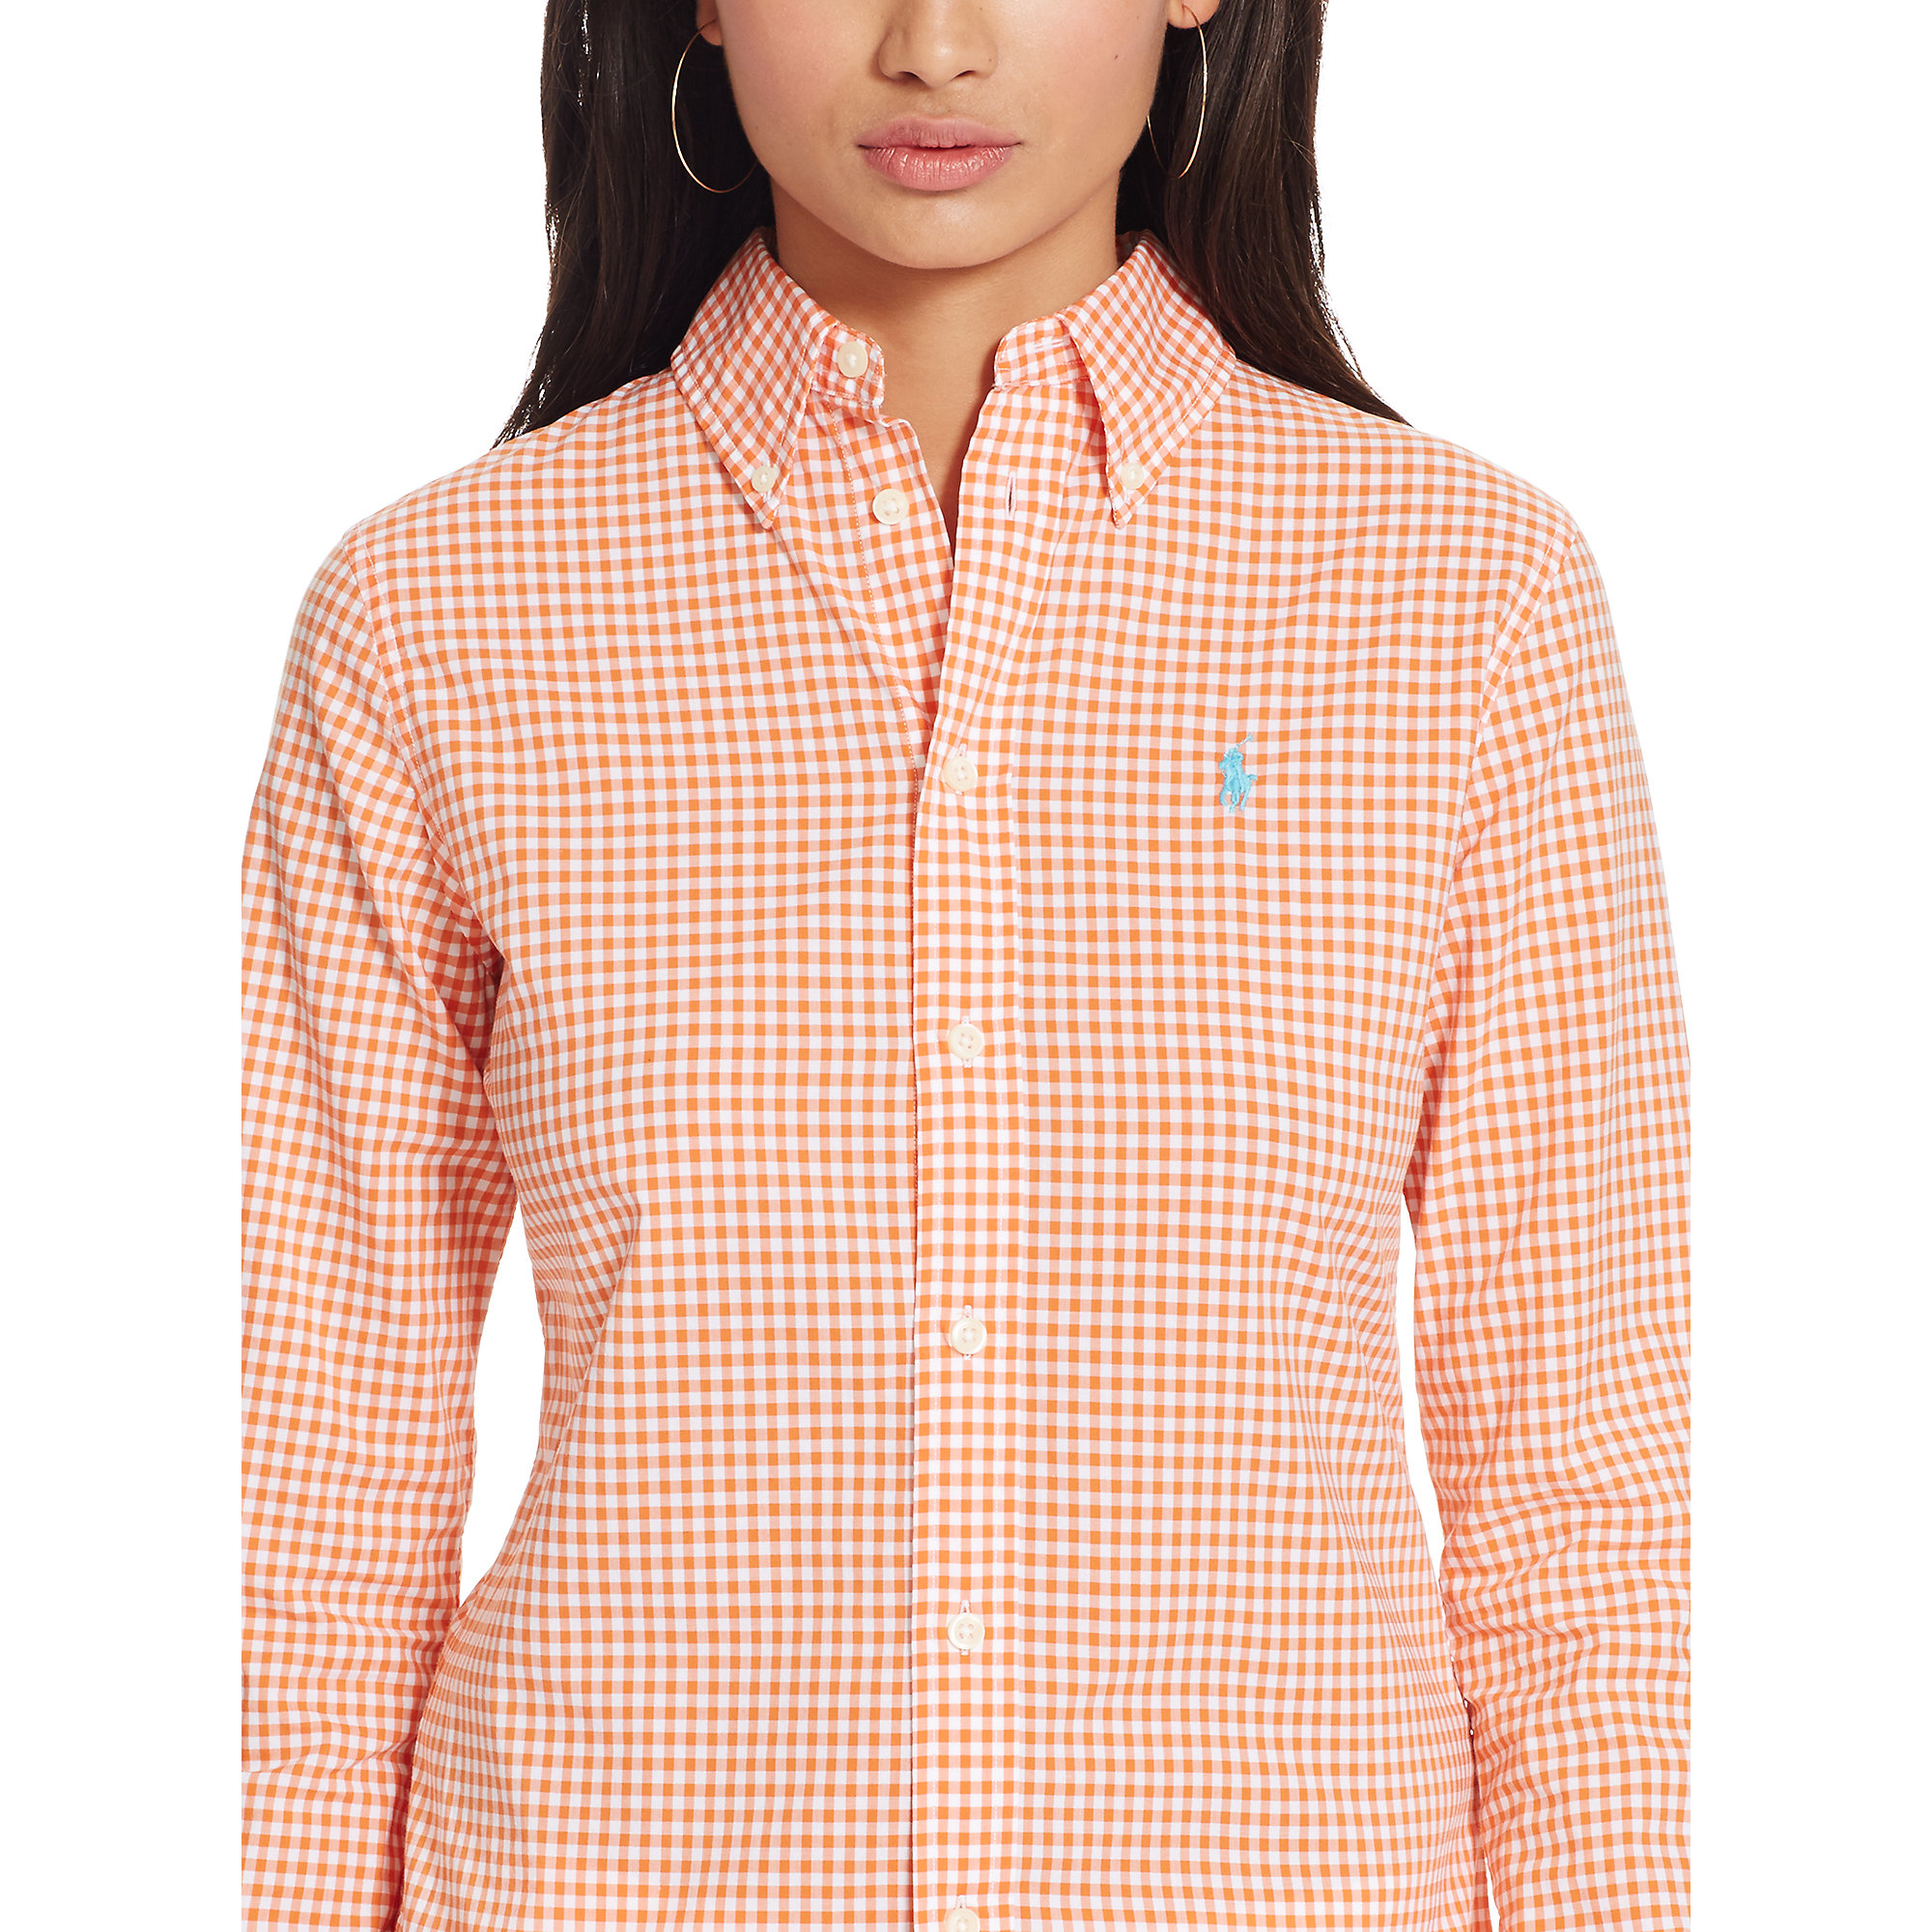 orange gingham shirt womens